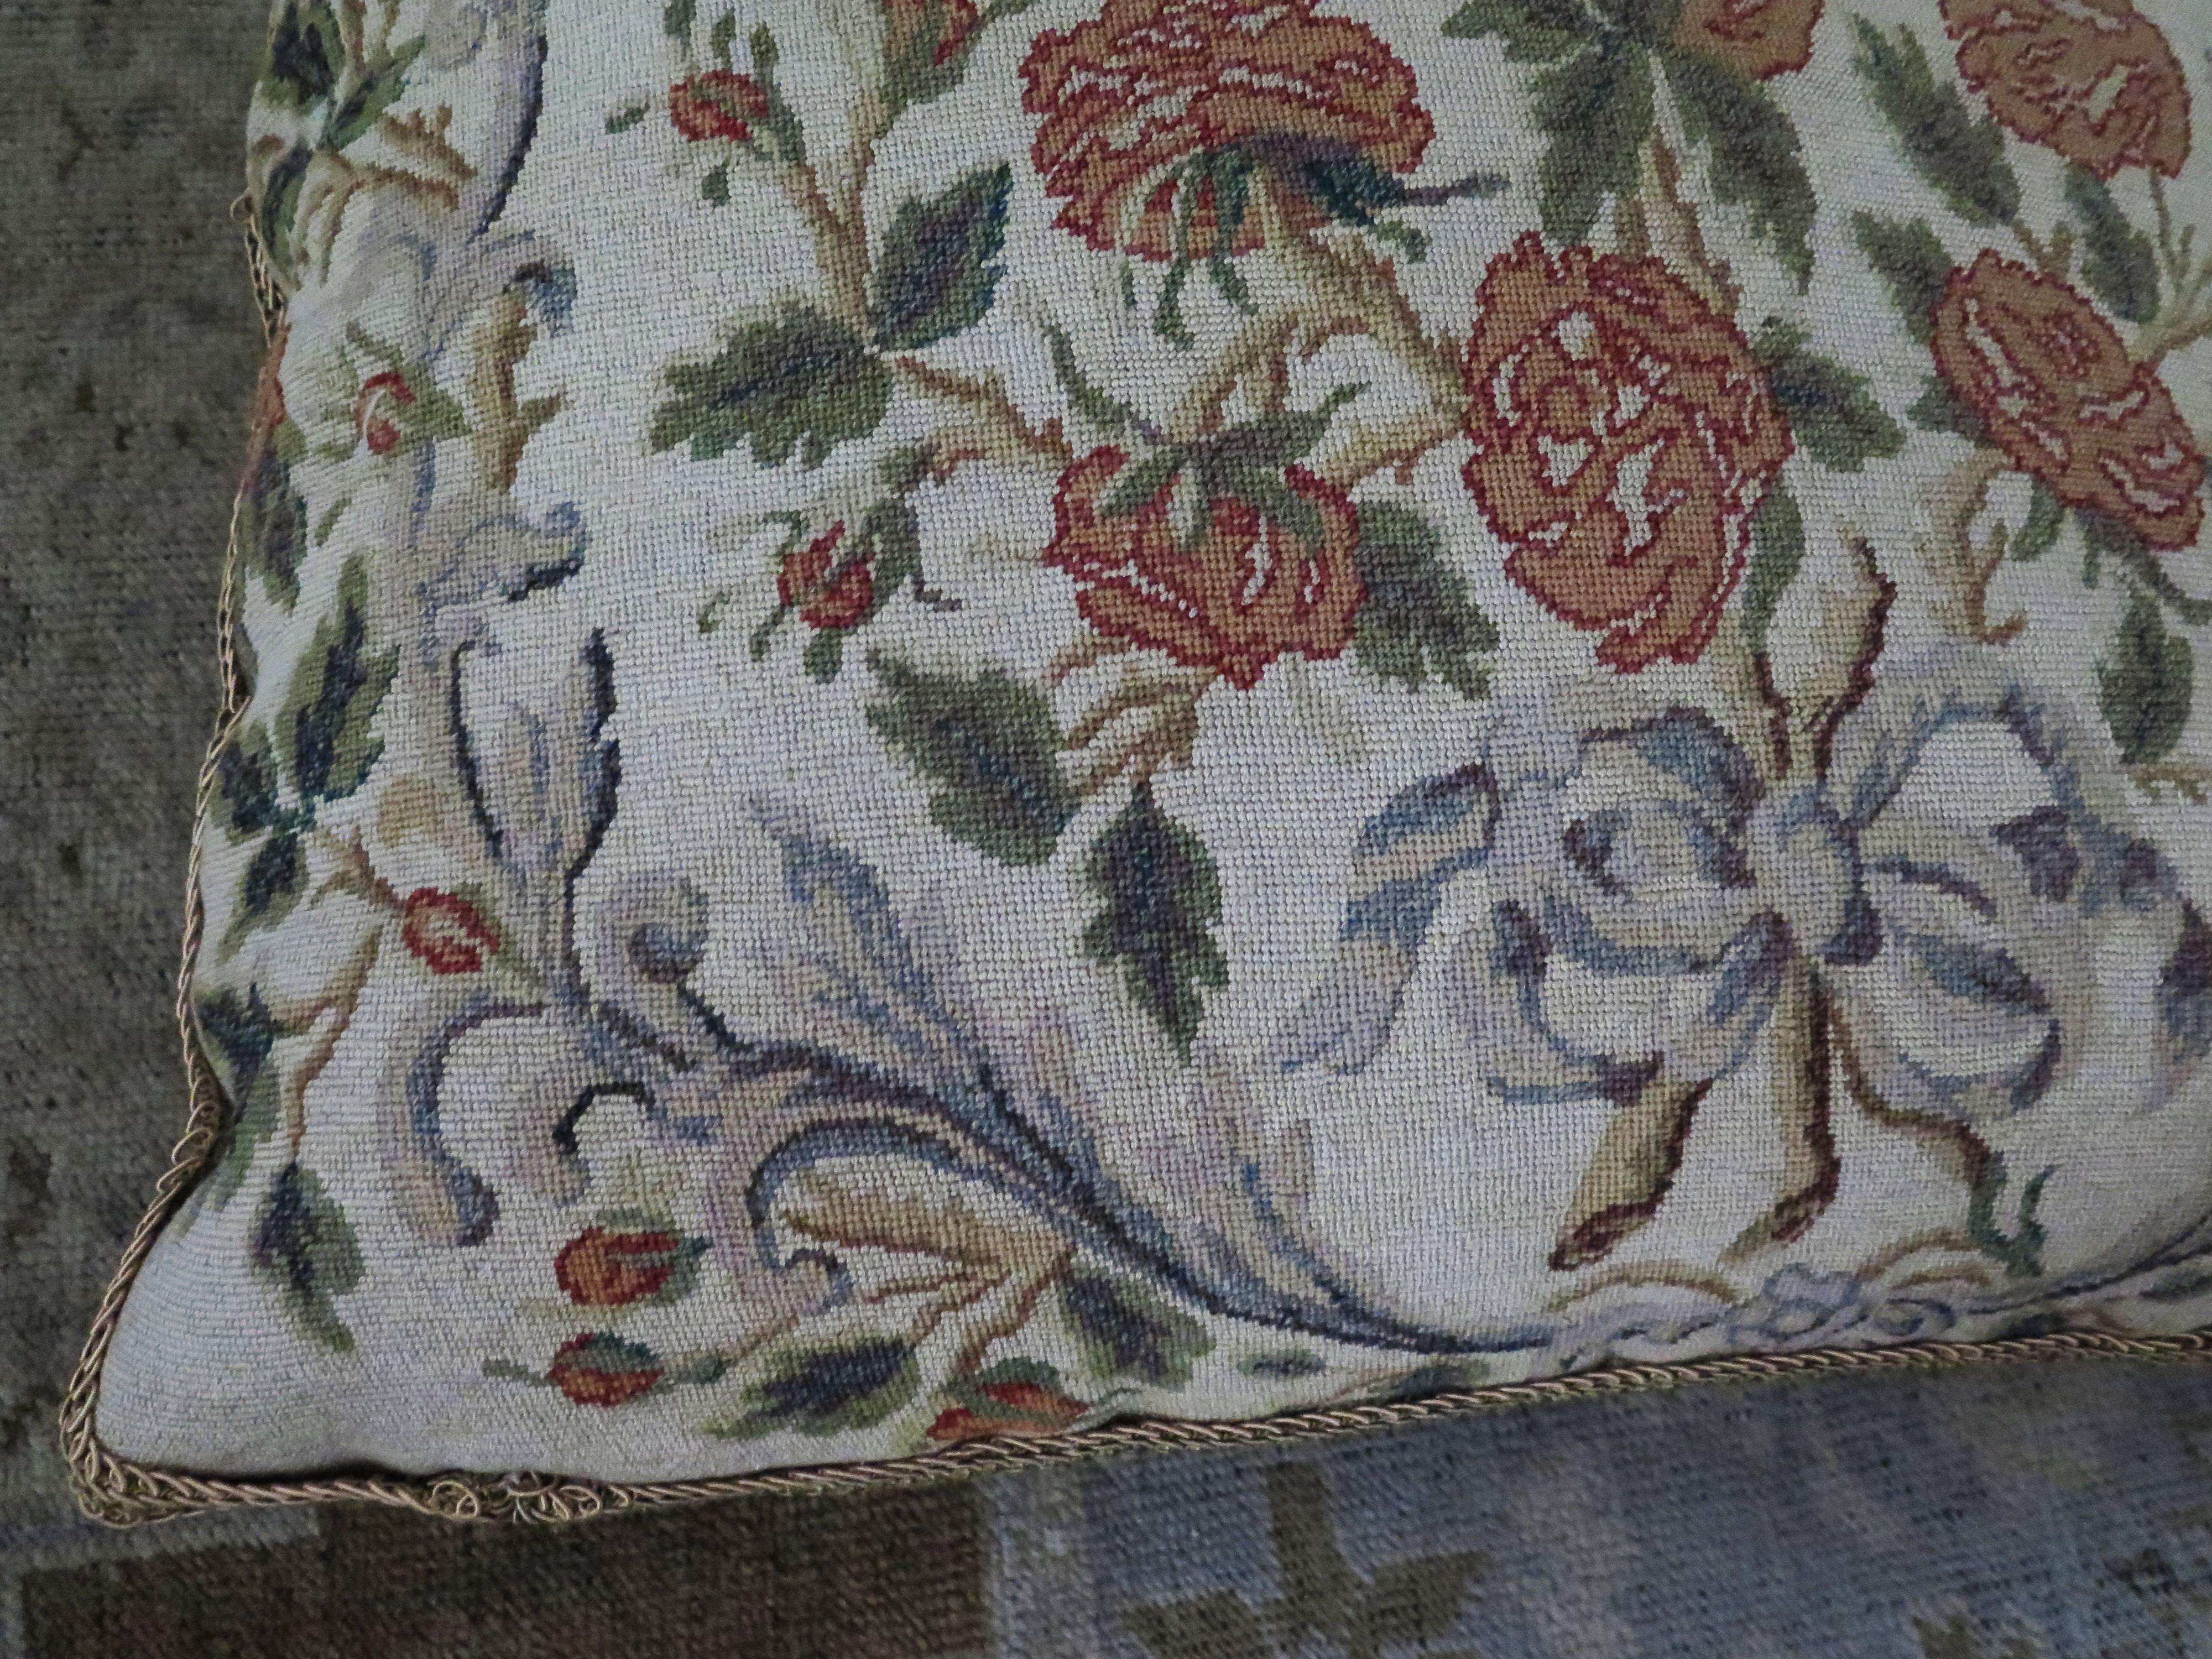 coussin en broderie à l'aiguille du 19e siècle représentant un joli bouquet de roses avec un ruban bleu. L'oreiller est doublé d'un riche velours de soie vert et d'une magnifique bordure dorée en boucle. Garni de duvet.